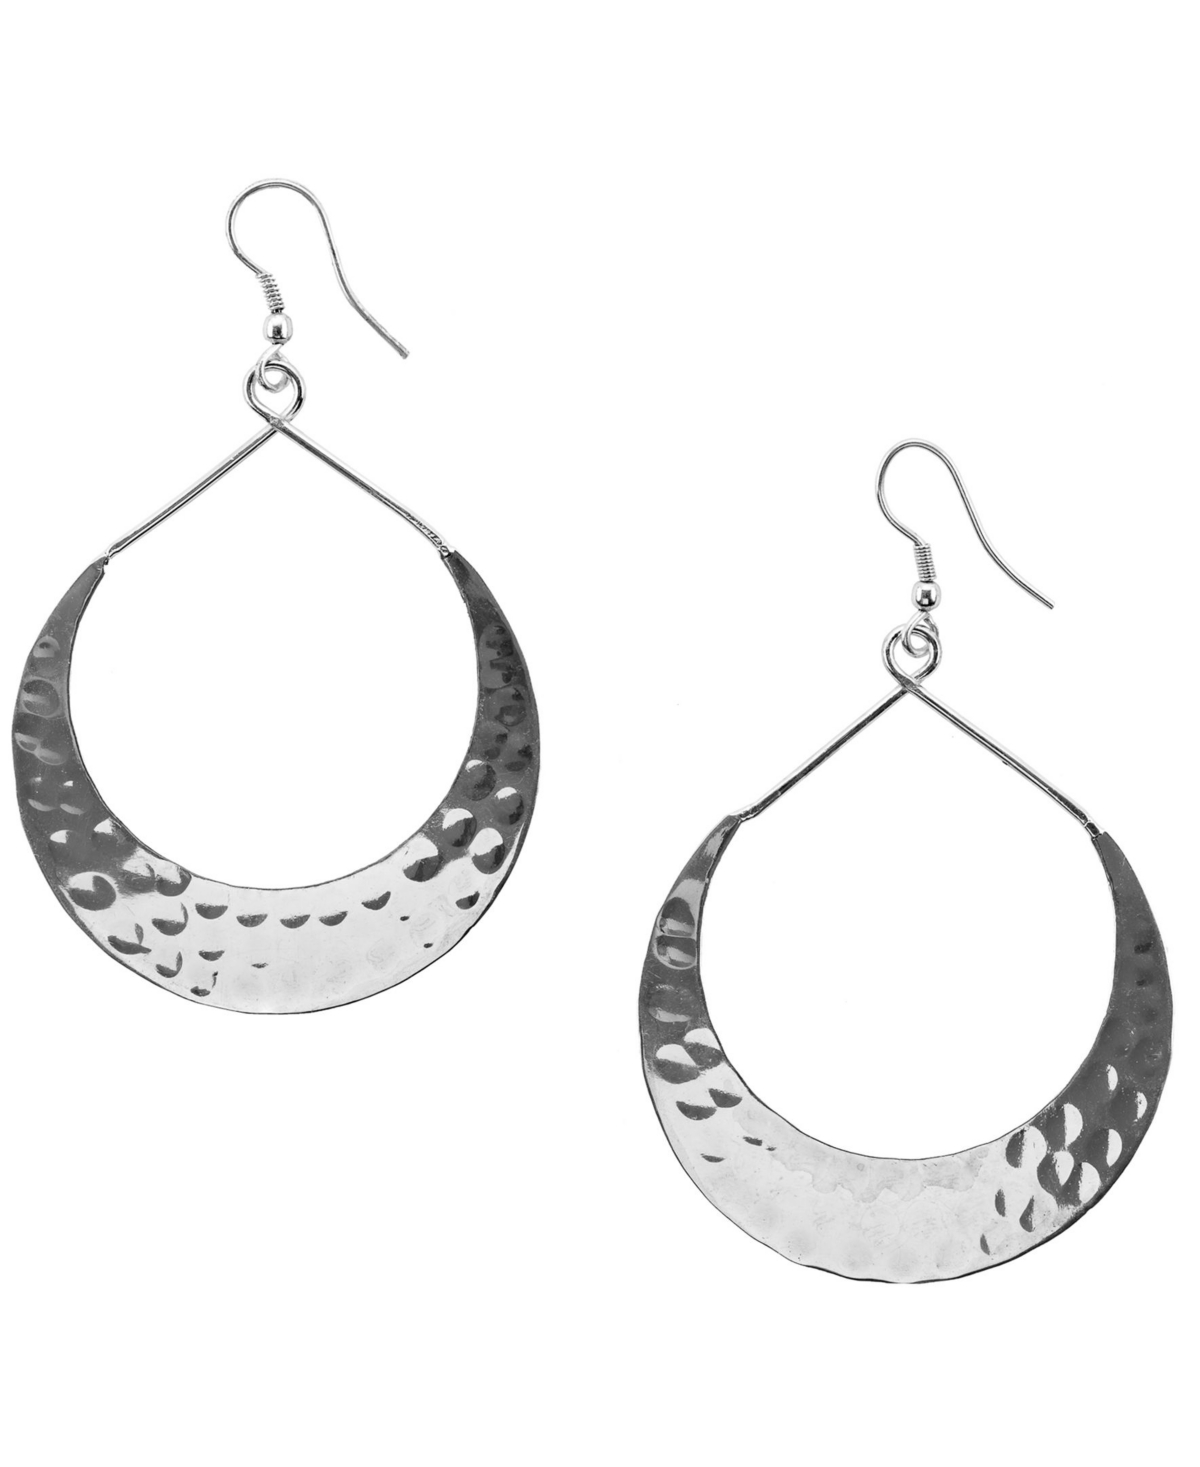 Women's Lunar Crescent Hoop Earrings - Silver Tone